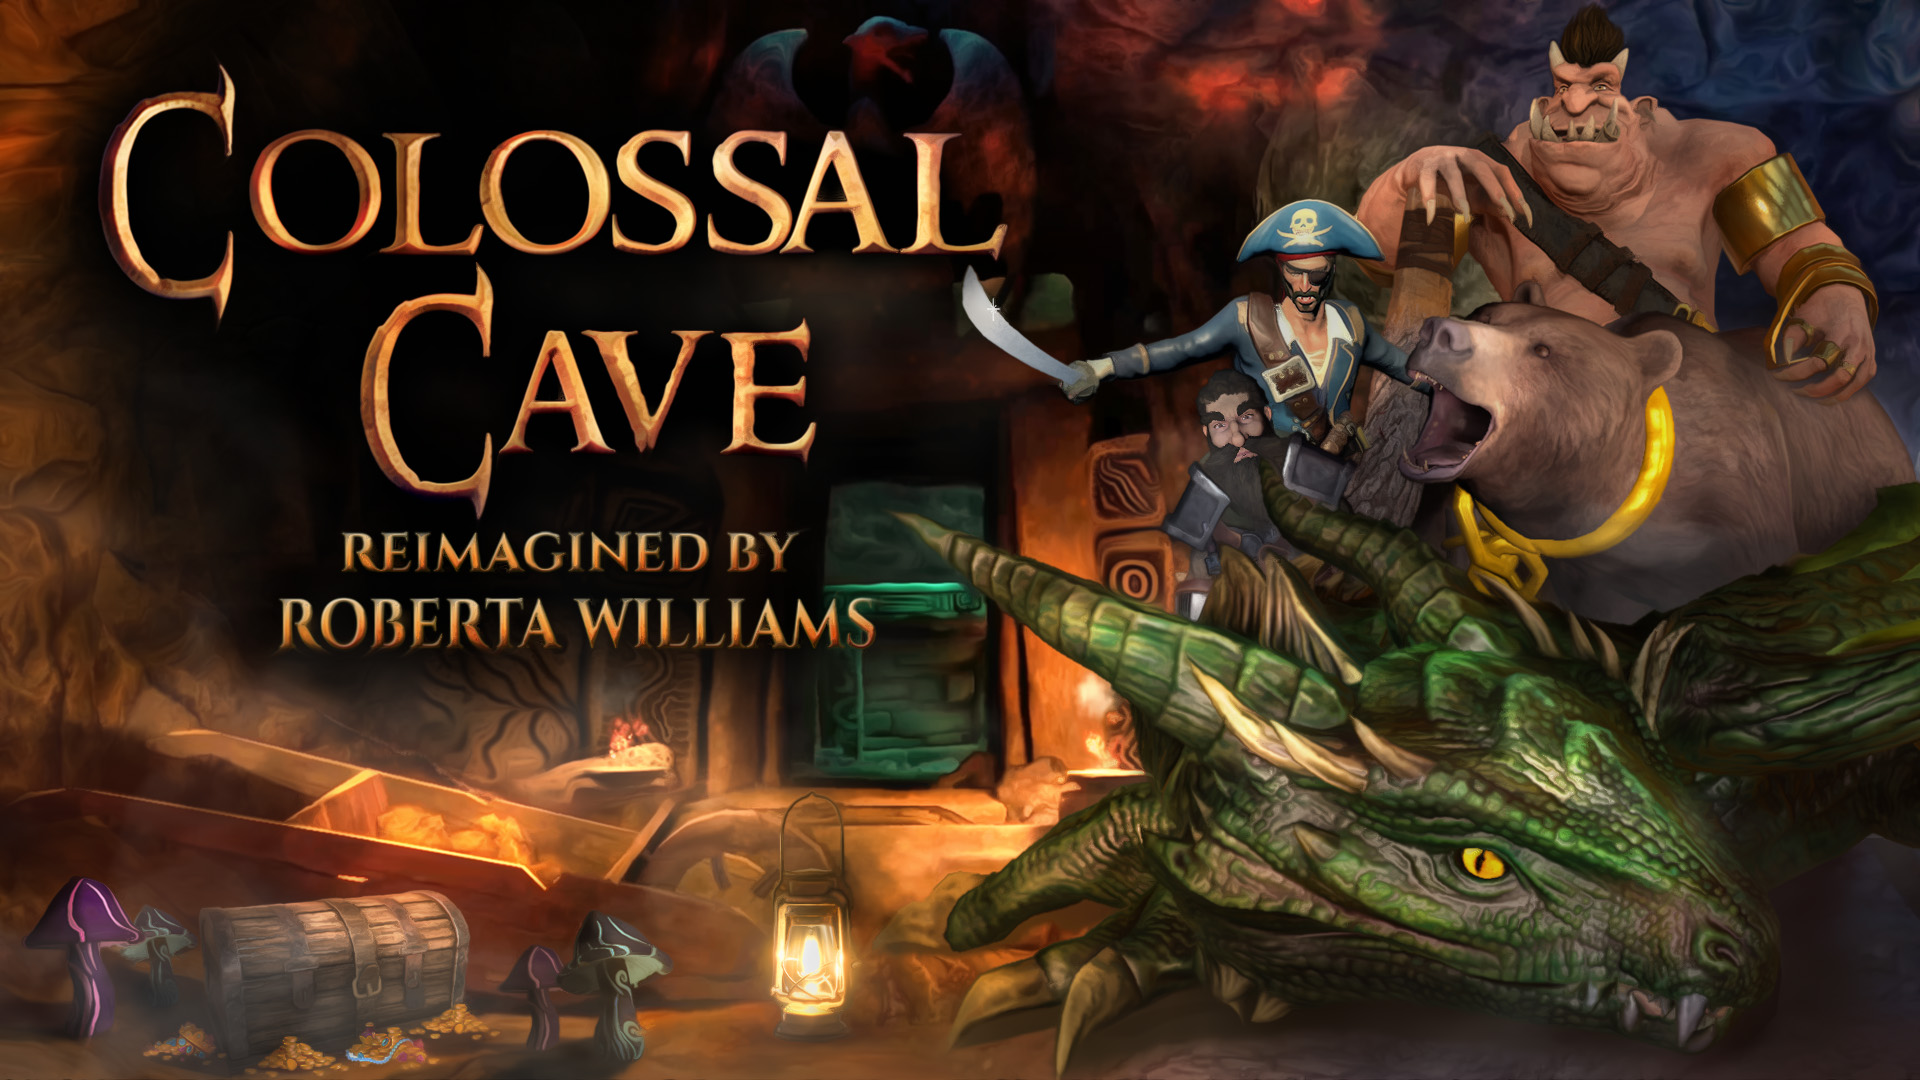 Auf der TGA wurde ein neuer Trailer zu Colossal Cave gezeigt, der einen Veröffentlichungstermin Anfang nächsten Jahres angibt